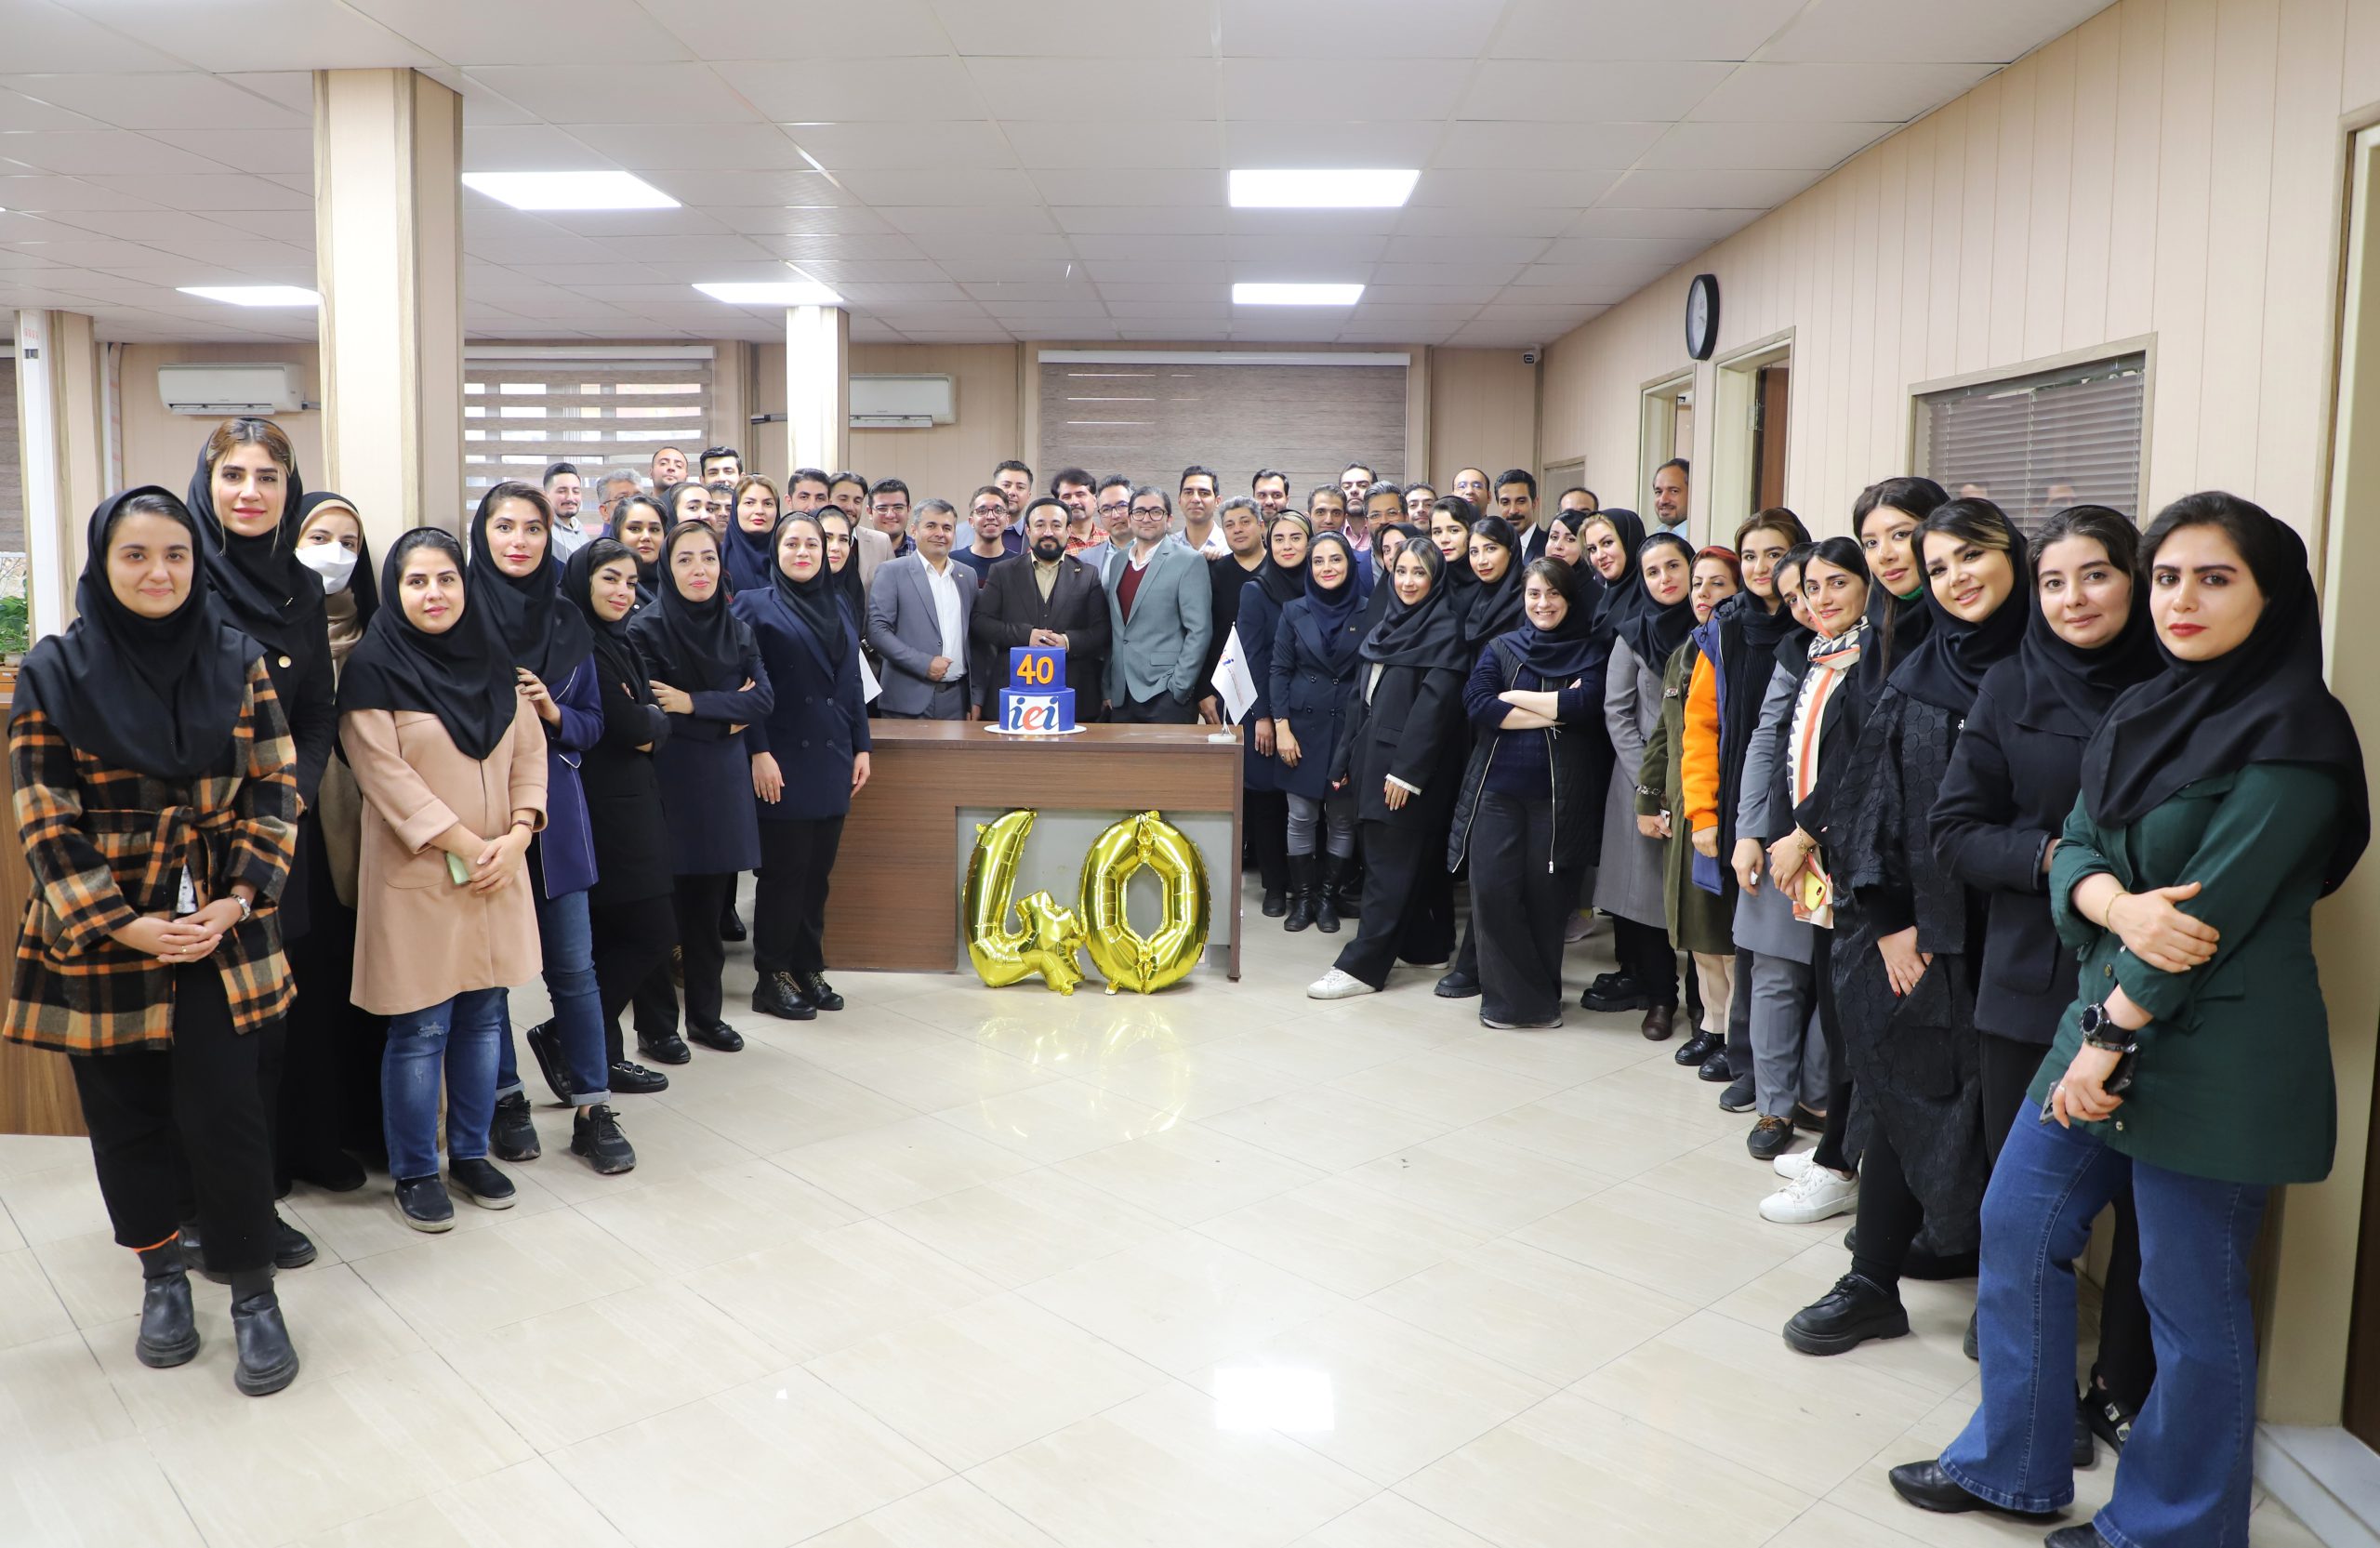 شرکت بازرسی مهندسی ایران iei ، چهلمین سالگرد تاسیس خود را جشن گرفت.